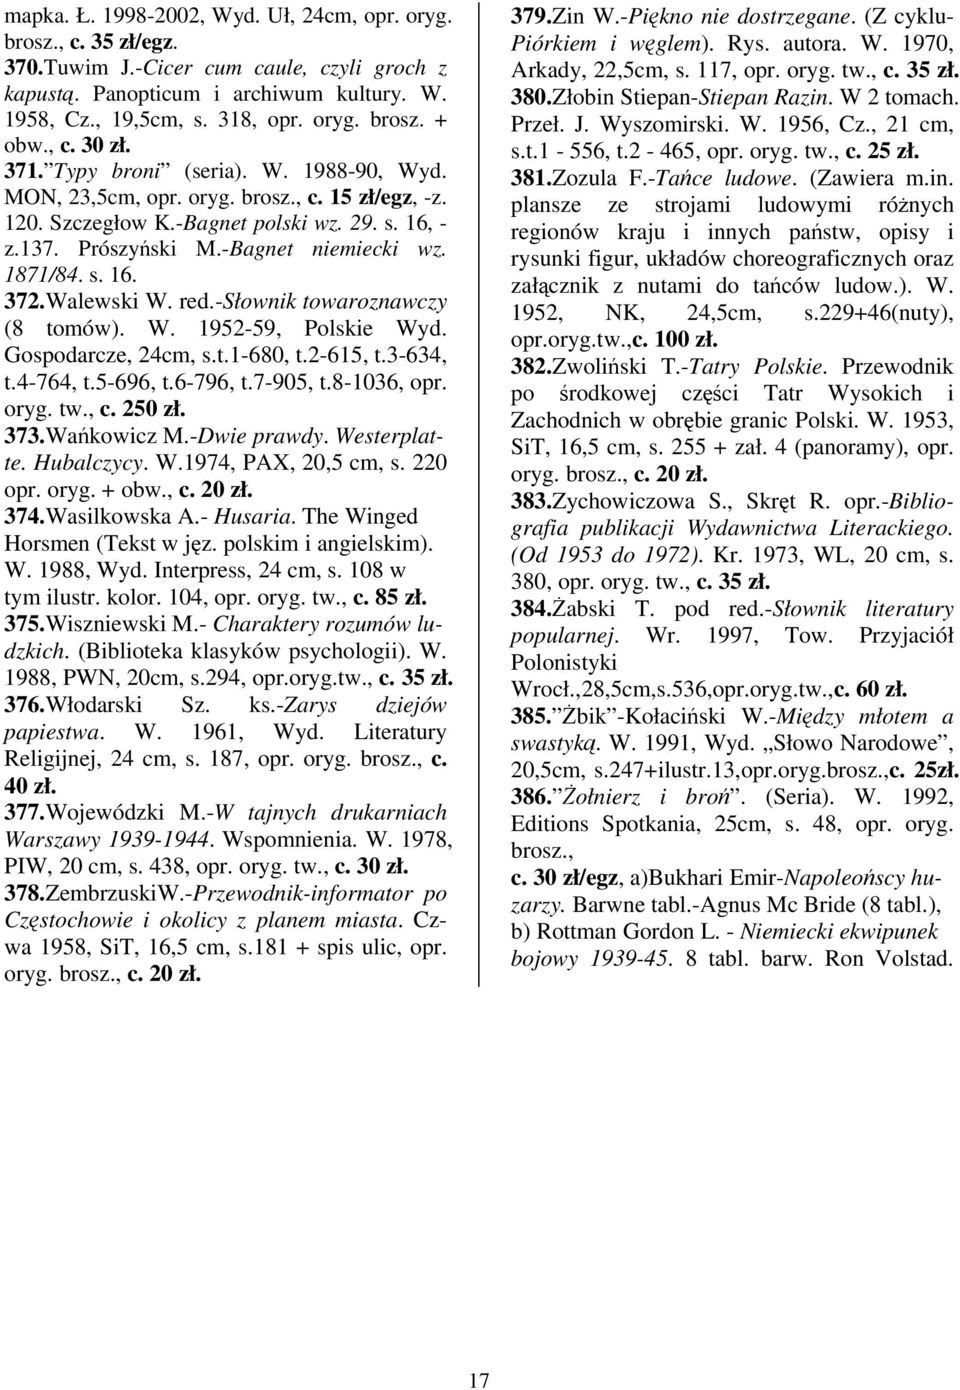 s. 16. 372.Walewski W. red.-słownik towaroznawczy (8 tomów). W. 1952-59, Polskie Wyd. Gospodarcze, 24cm, s.t.1-680, t.2-615, t.3-634, t.4-764, t.5-696, t.6-796, t.7-905, t.8-1036, opr. oryg. tw., c.